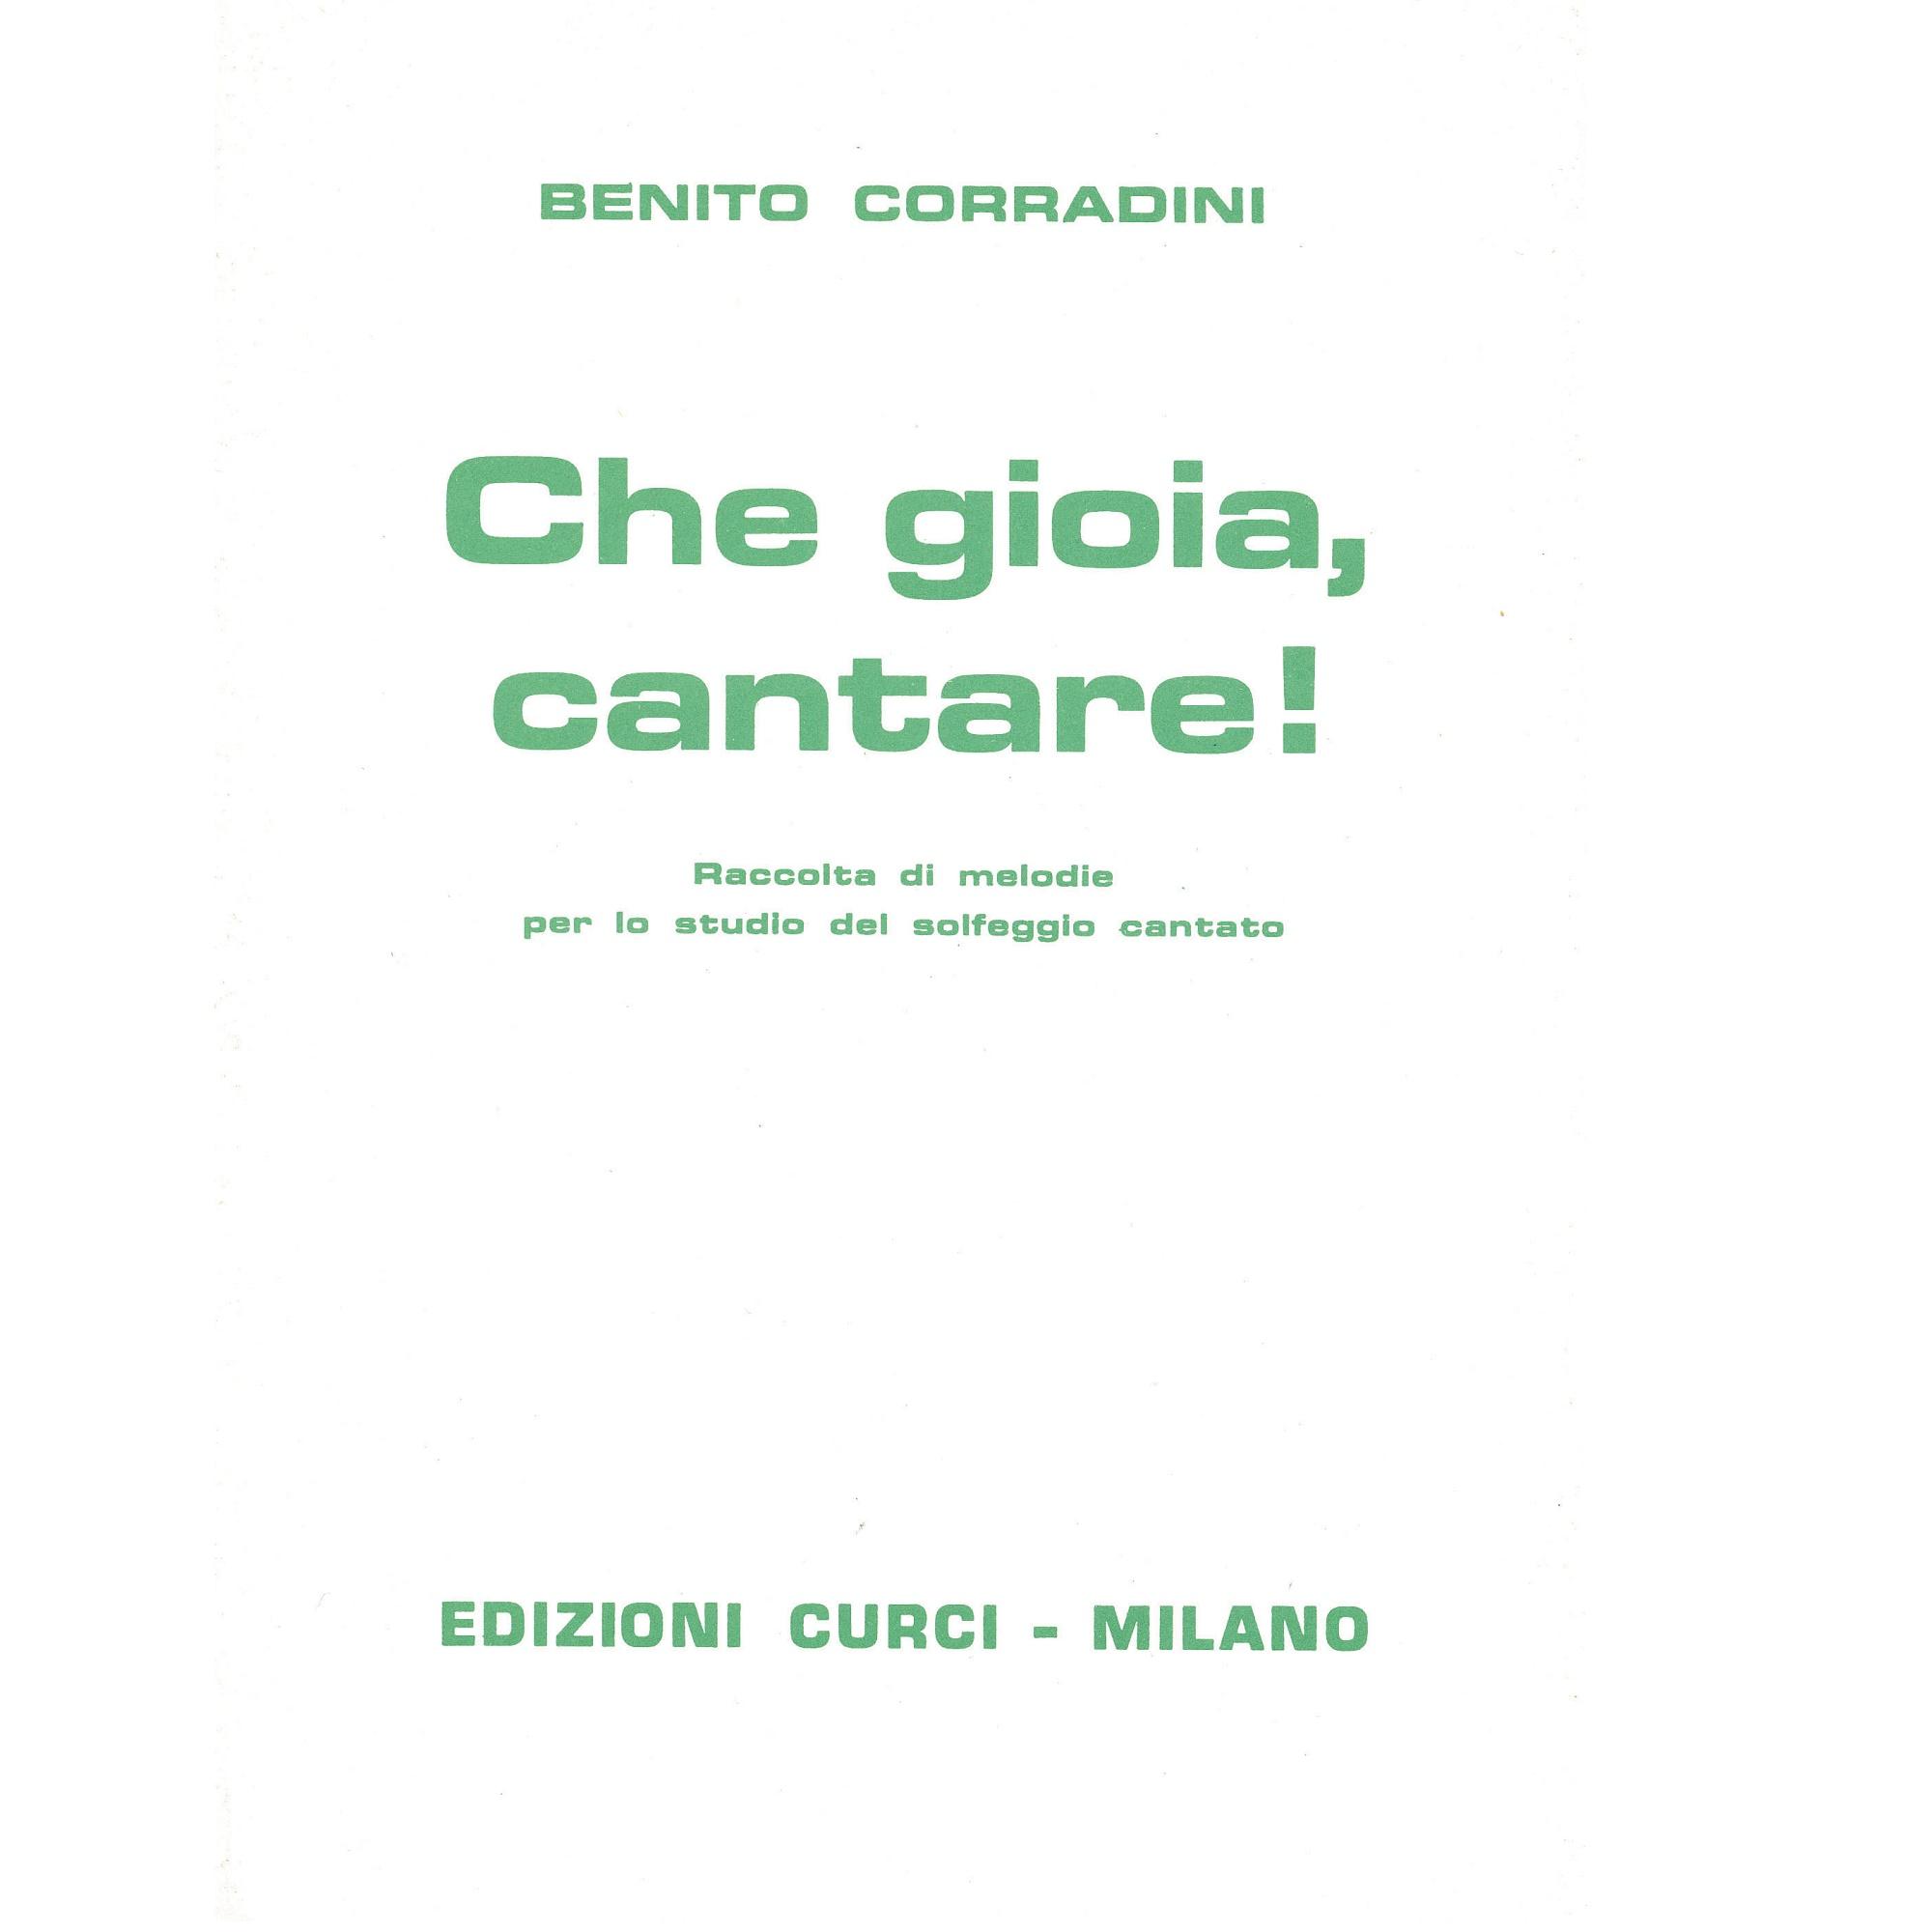 Benito Corradini Che gioia, cantare! - Edizioni Curci